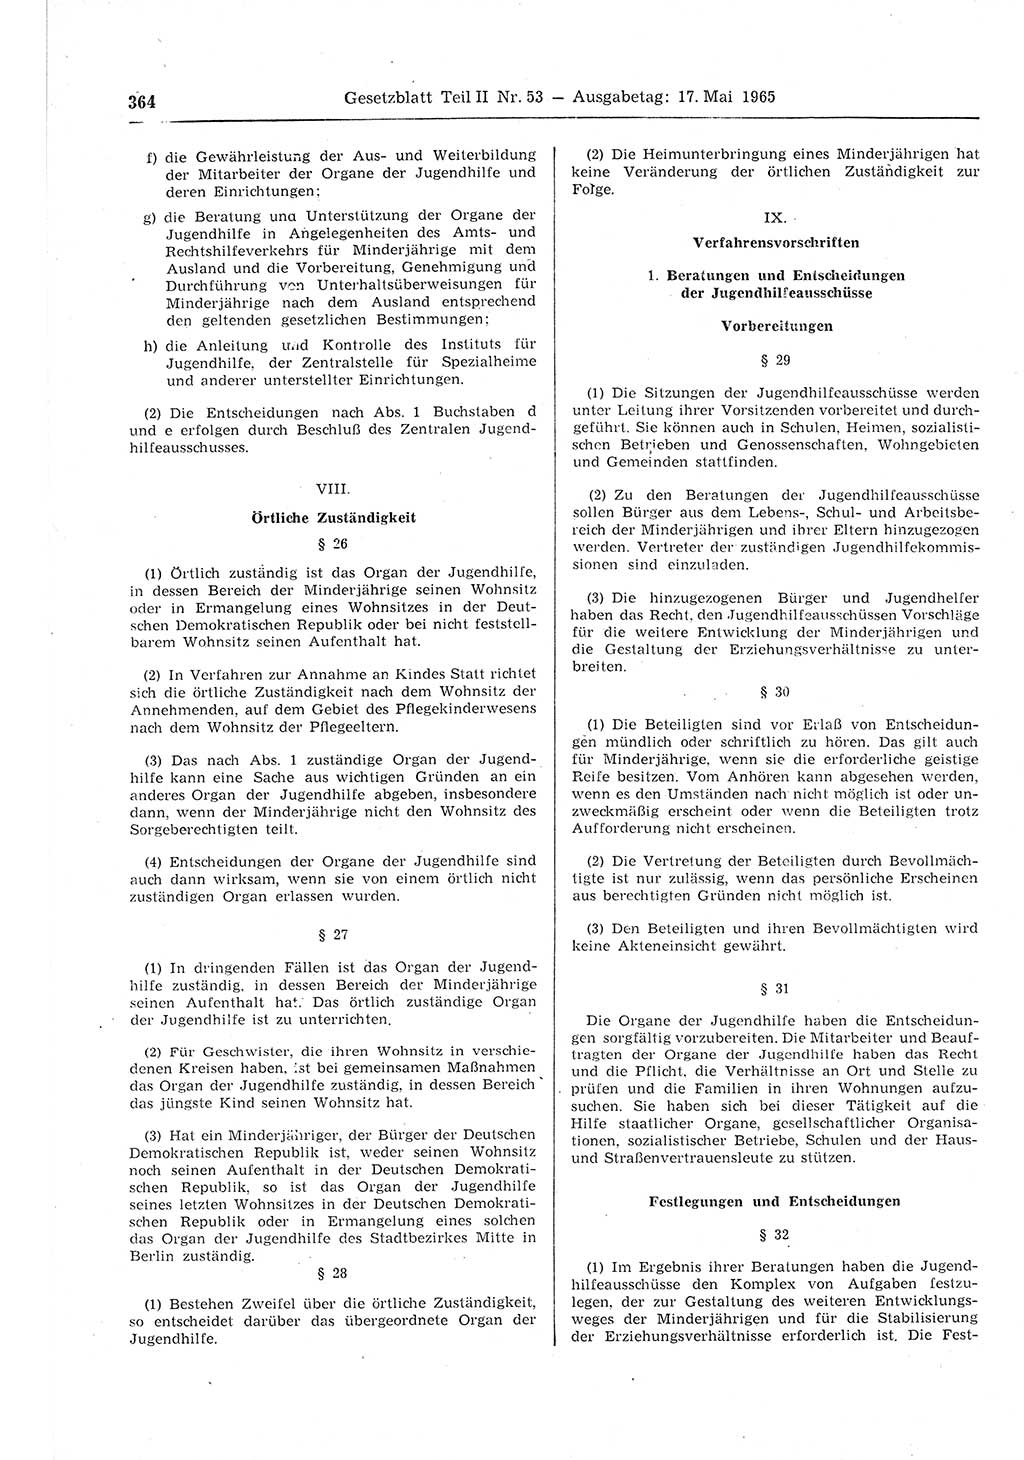 Gesetzblatt (GBl.) der Deutschen Demokratischen Republik (DDR) Teil ⅠⅠ 1965, Seite 364 (GBl. DDR ⅠⅠ 1965, S. 364)